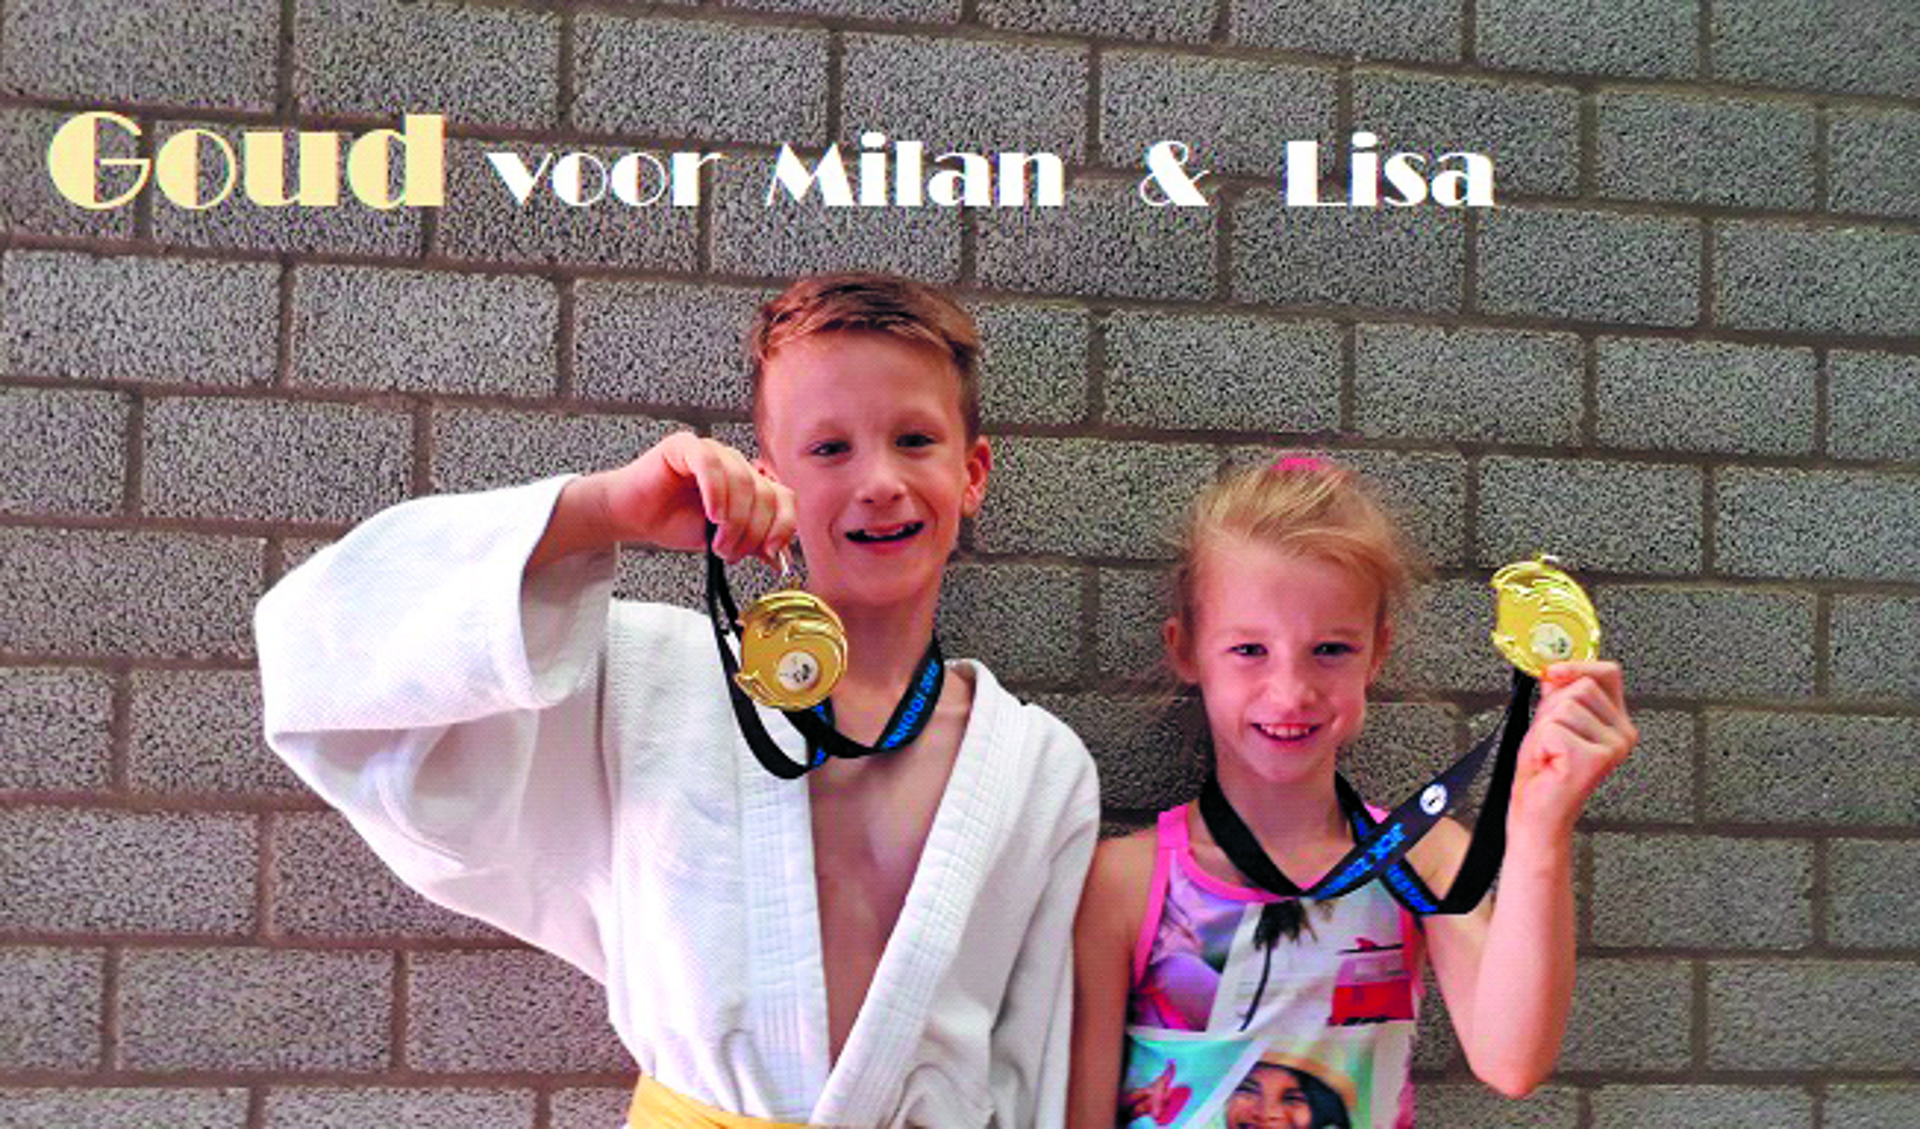 Milan en Lisa Borst behaalde beide goud tijdens het judotoernooi in Capelle a/d IJssel. (Foto: aangeleverd)